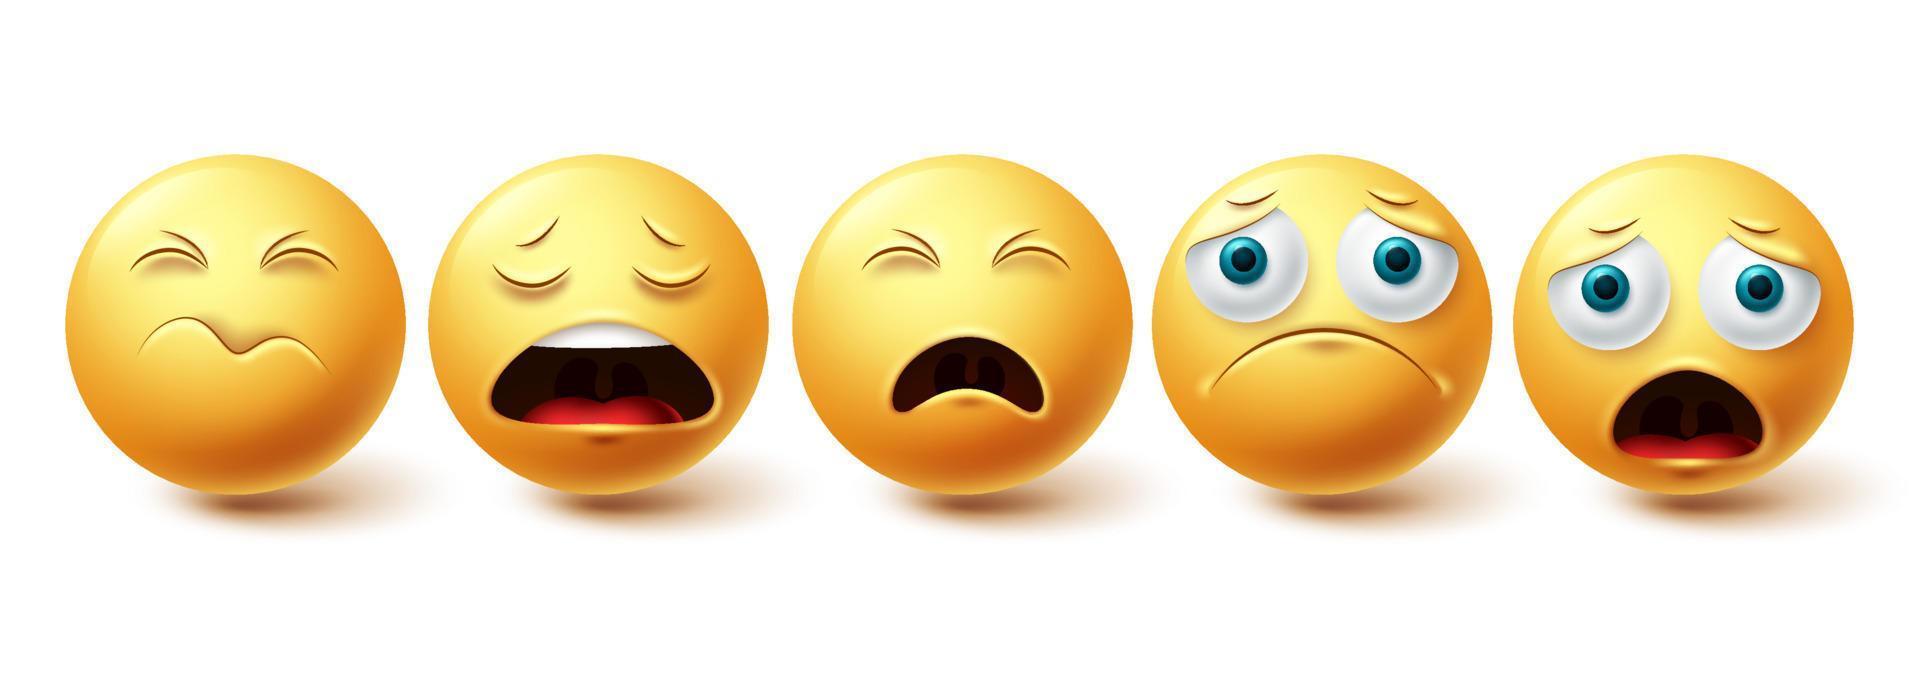 Emoji trauriger Vektorsatz. Emoticon einsame, schockierte und deprimierte gelbe Gesichter-Sammlung einzeln auf weißem Hintergrund für Emoji-Grafikelemente. Vektor-Illustration vektor